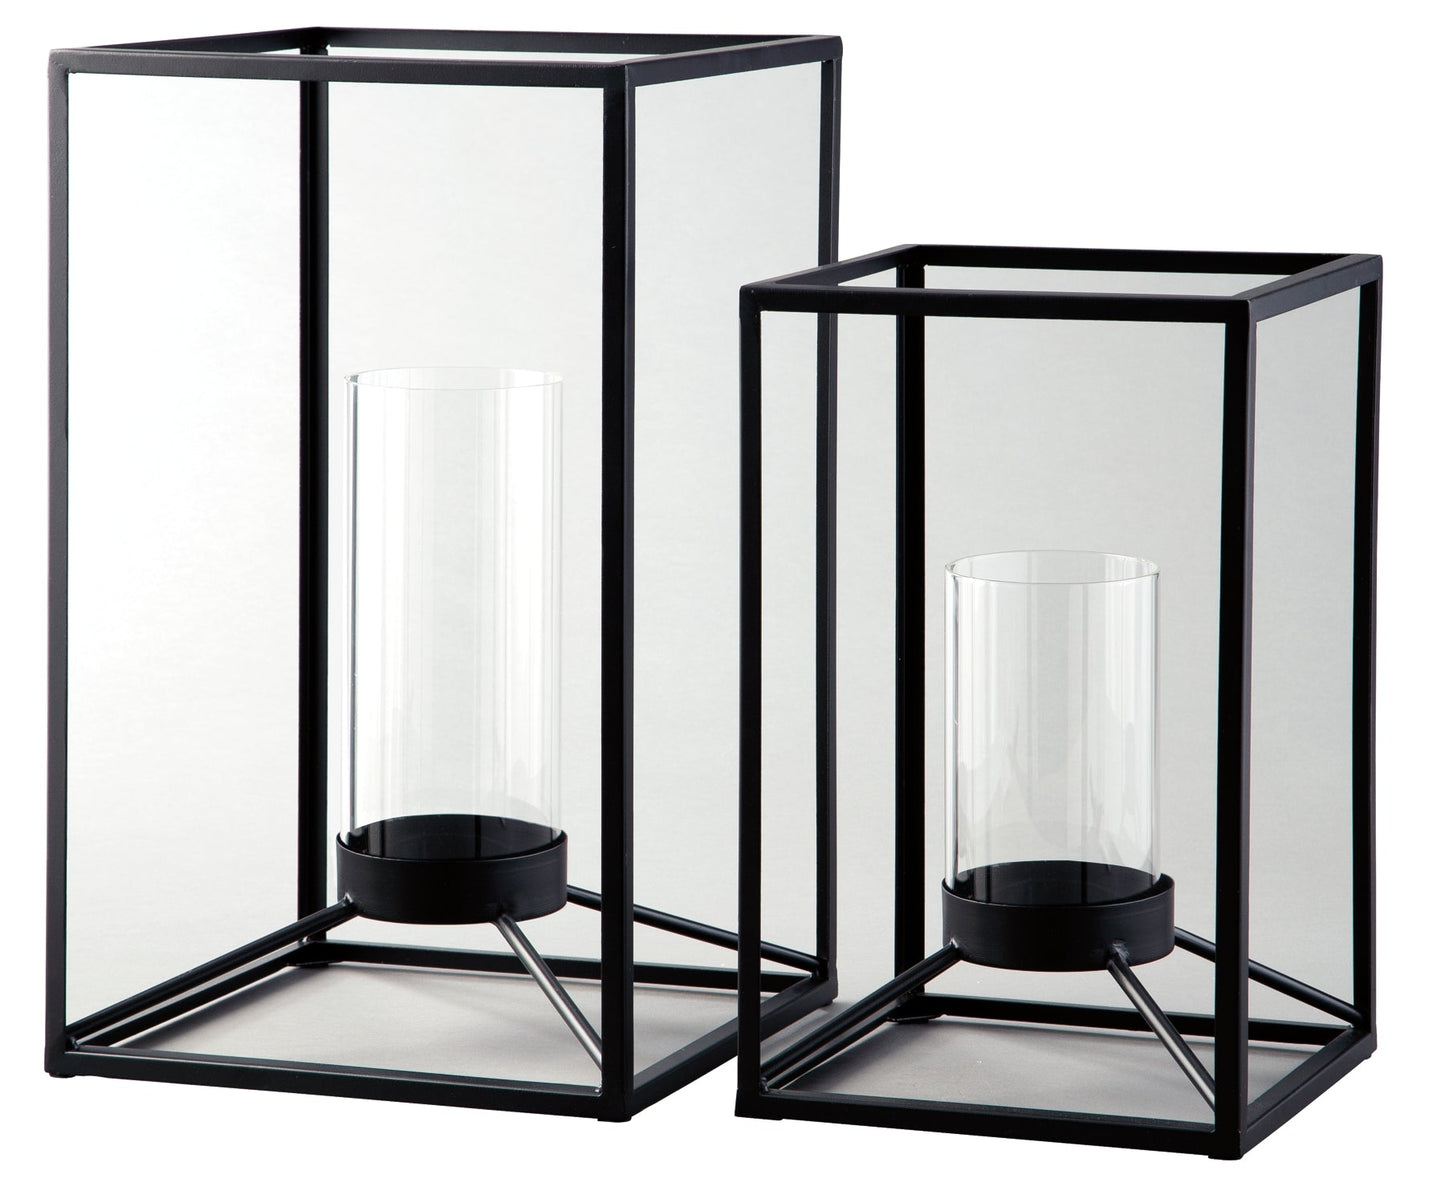 Dimtrois Lantern Set (2/CN) Smyrna Furniture Outlet